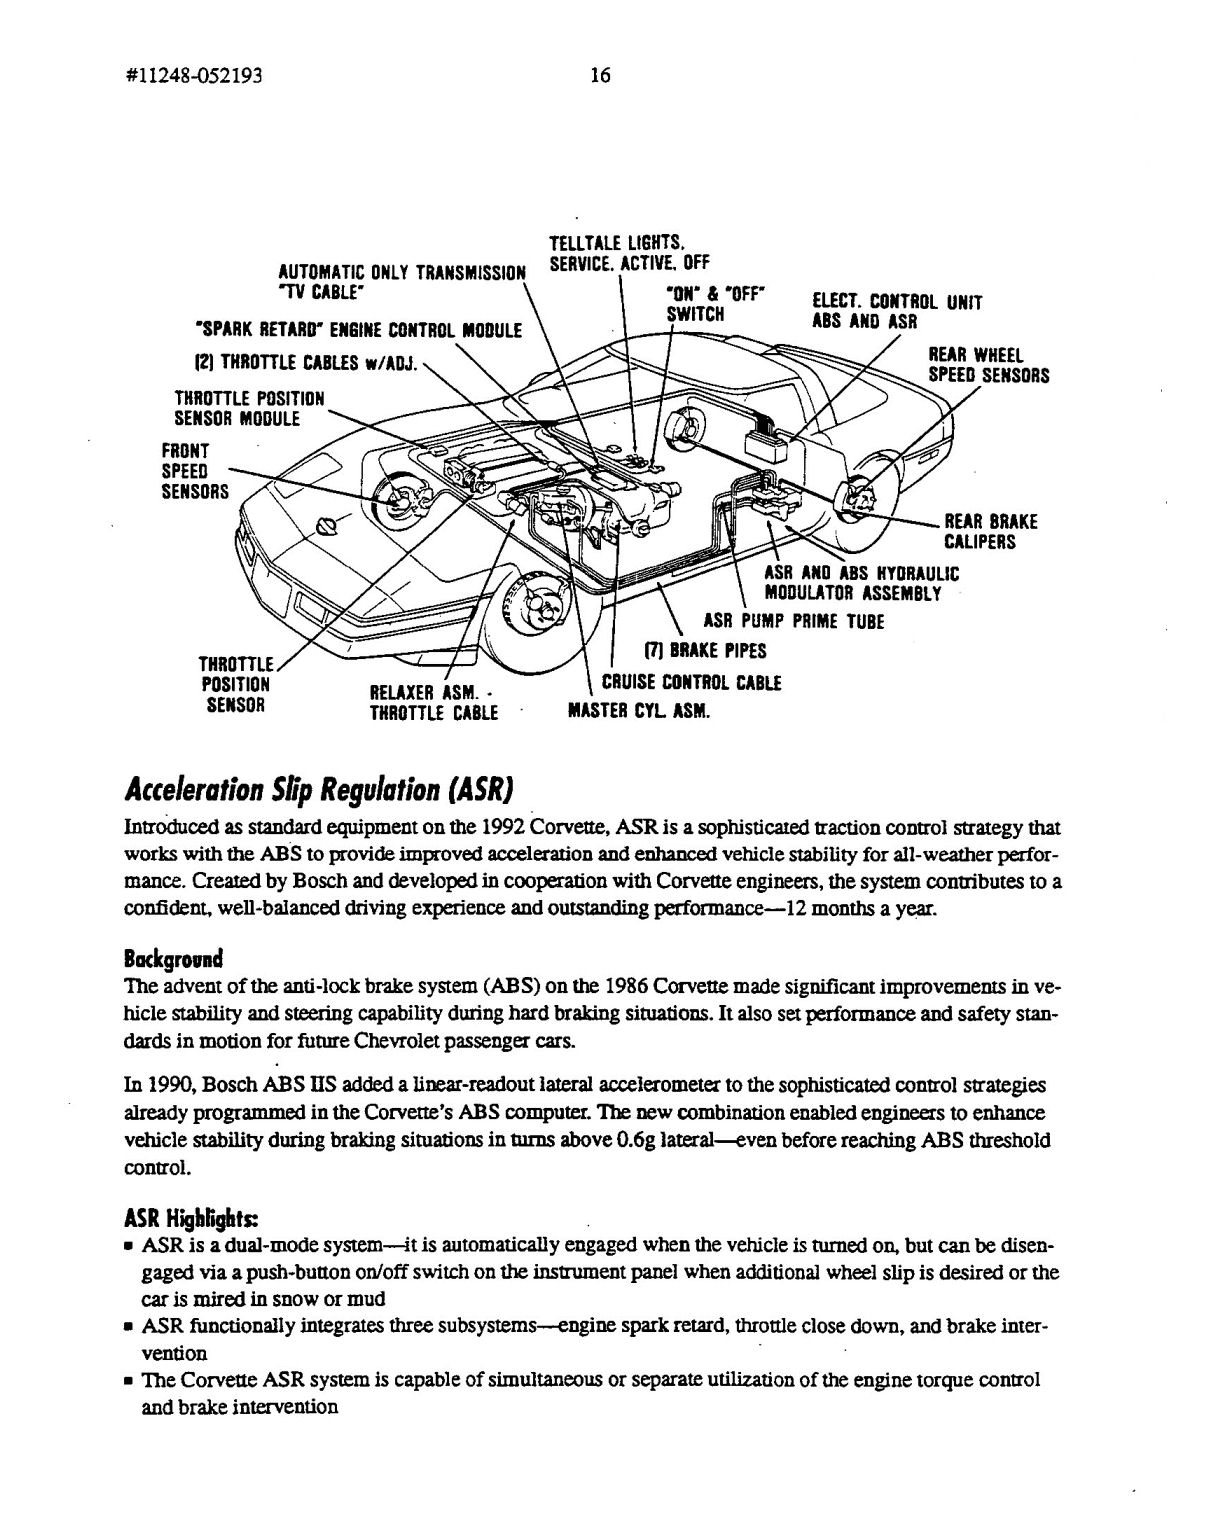 1994_Chevrolet_Corvette_Overview-16